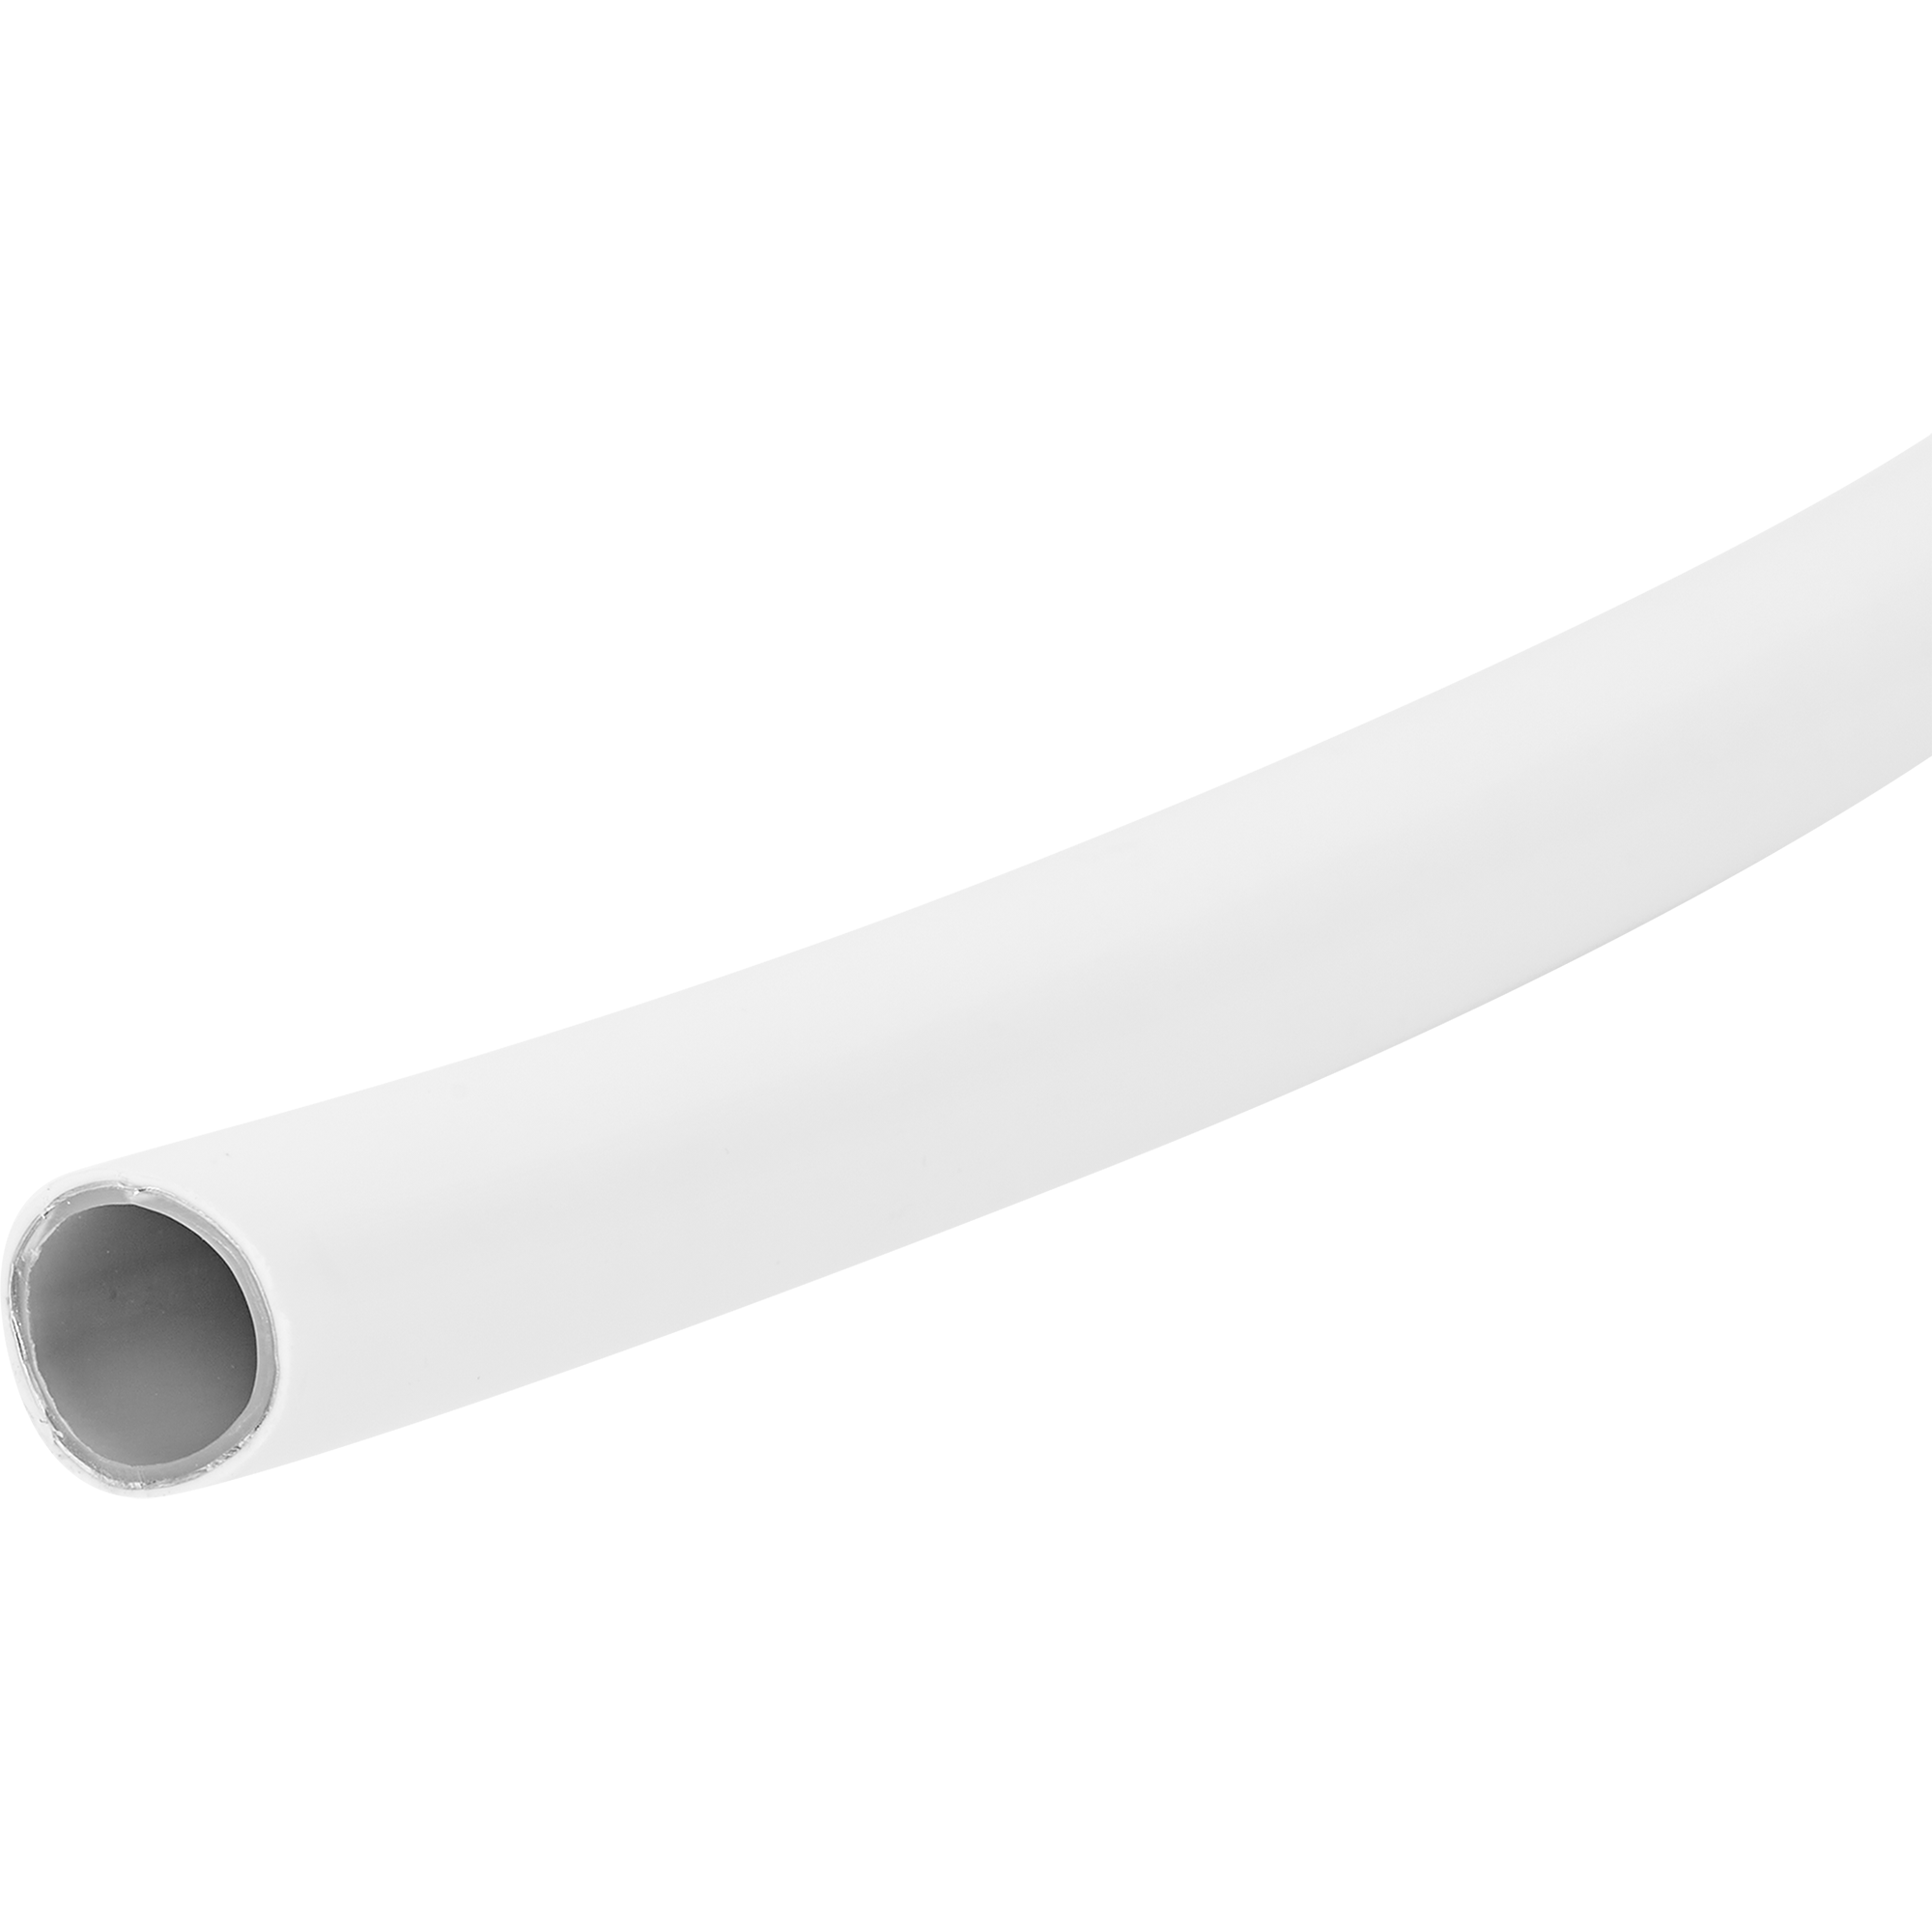 Труба металлопластиковая 16x2.0 мм 1 м ️  по цене 83 ₽/м  .